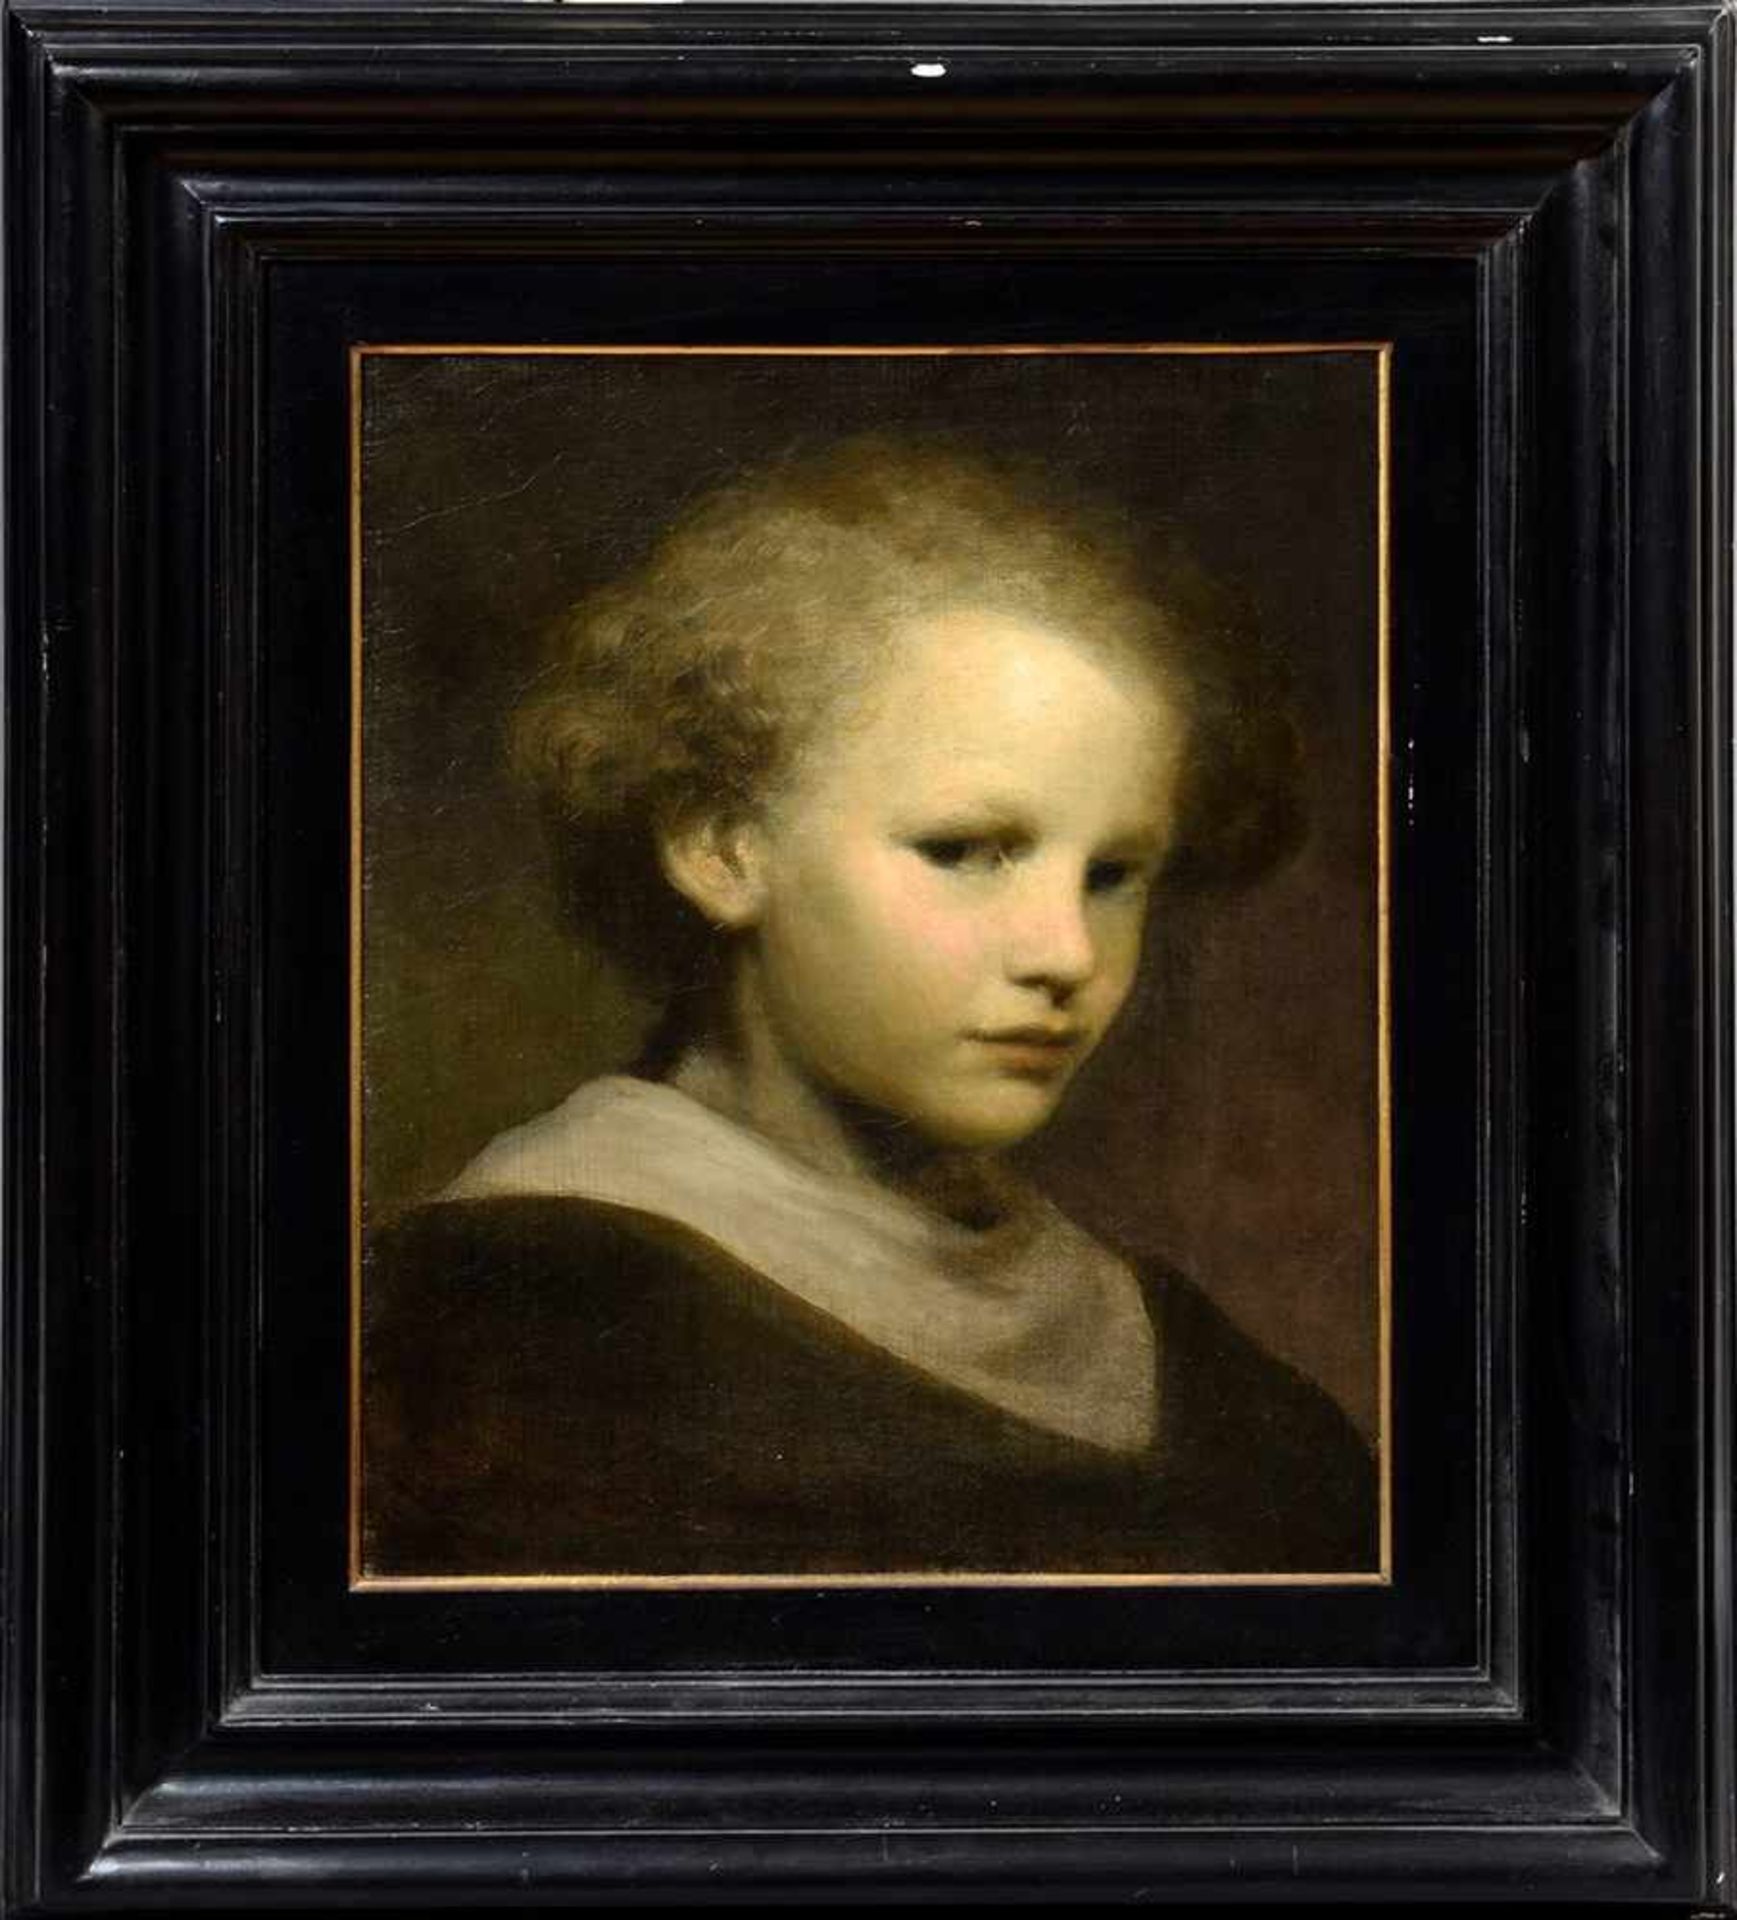 Carriere, Eugène (1849-1906) Nachfolge "Portrait eines Kindes", Öl/Leinwand, 42x34cm (m.R. 65x57cm), - Image 2 of 5